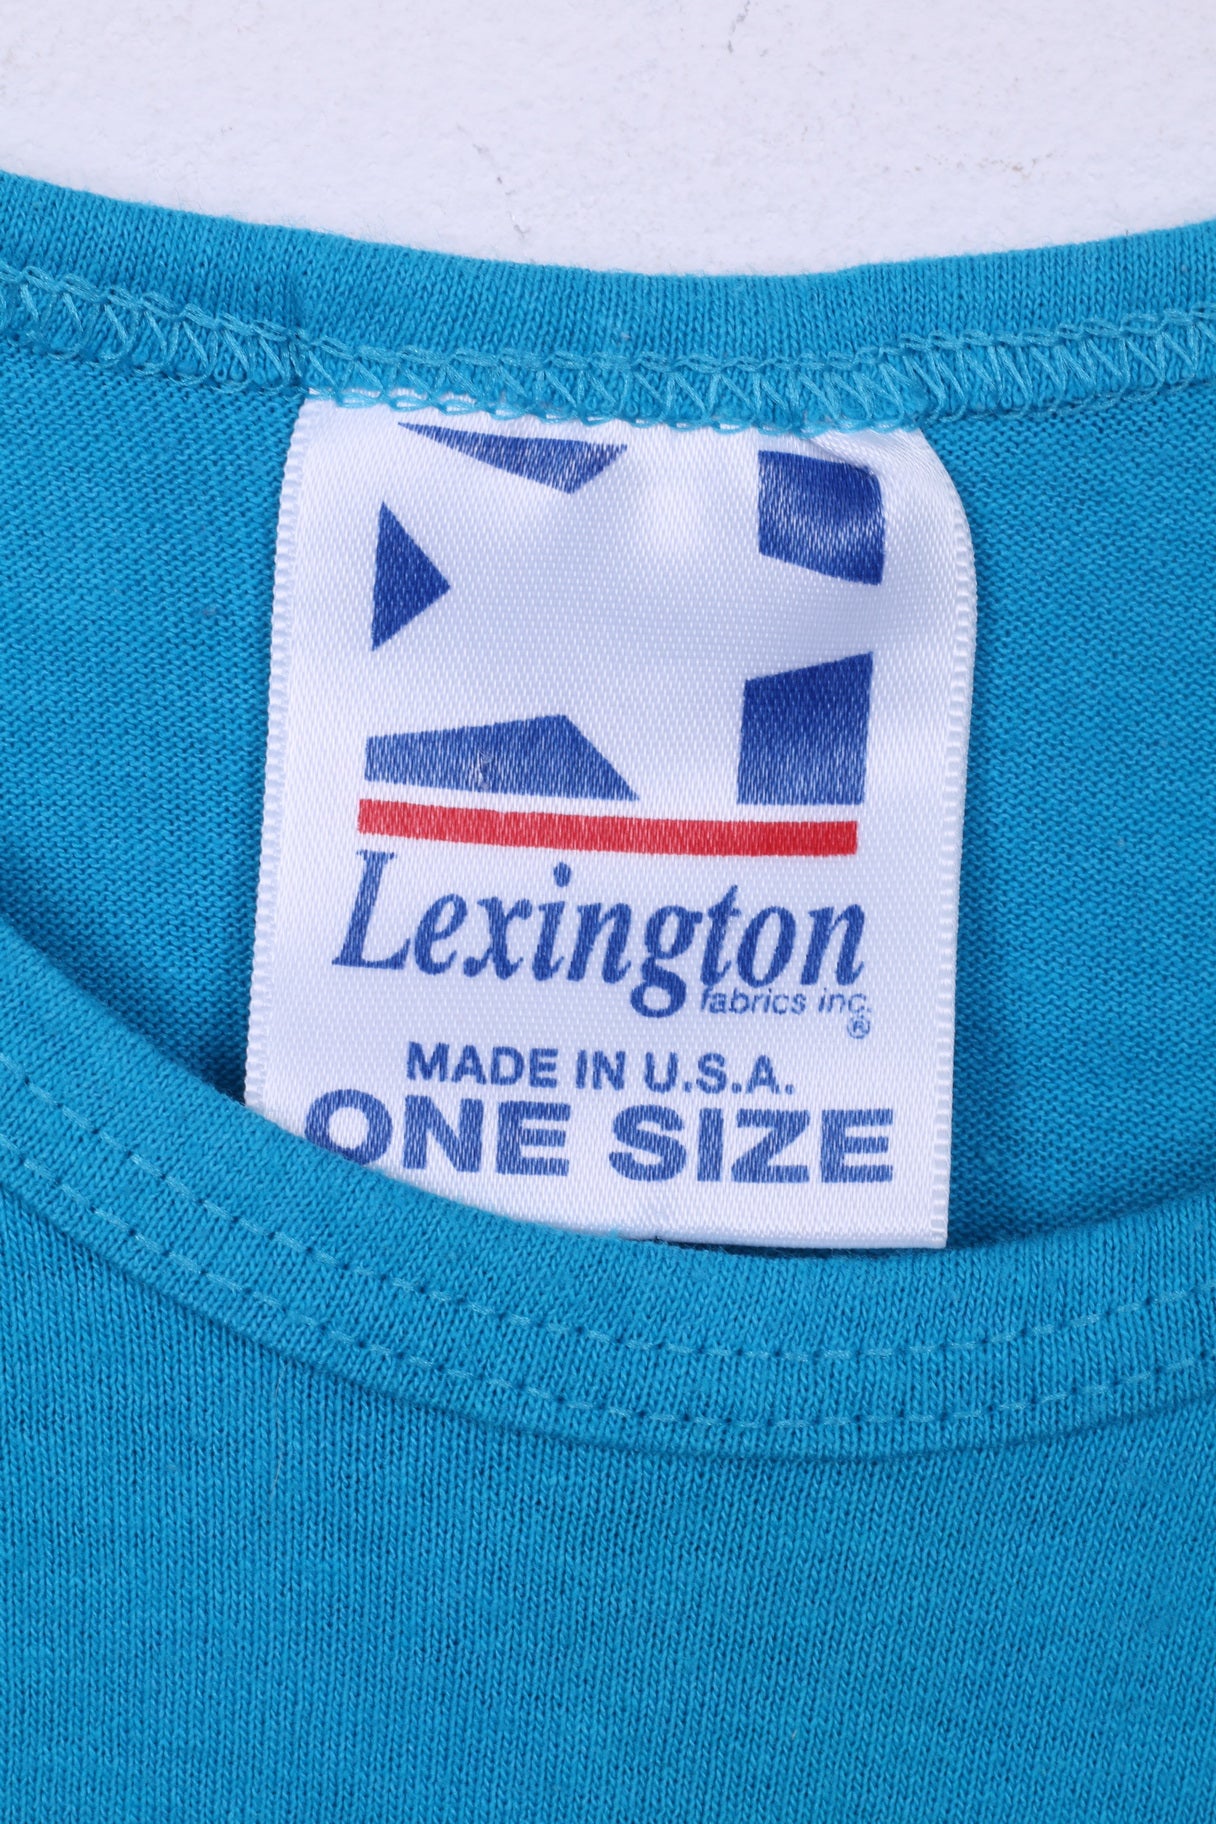 Tissus Lexington inc. Robe Taille Unique Key Largo Coton Sans Manches Bleu 